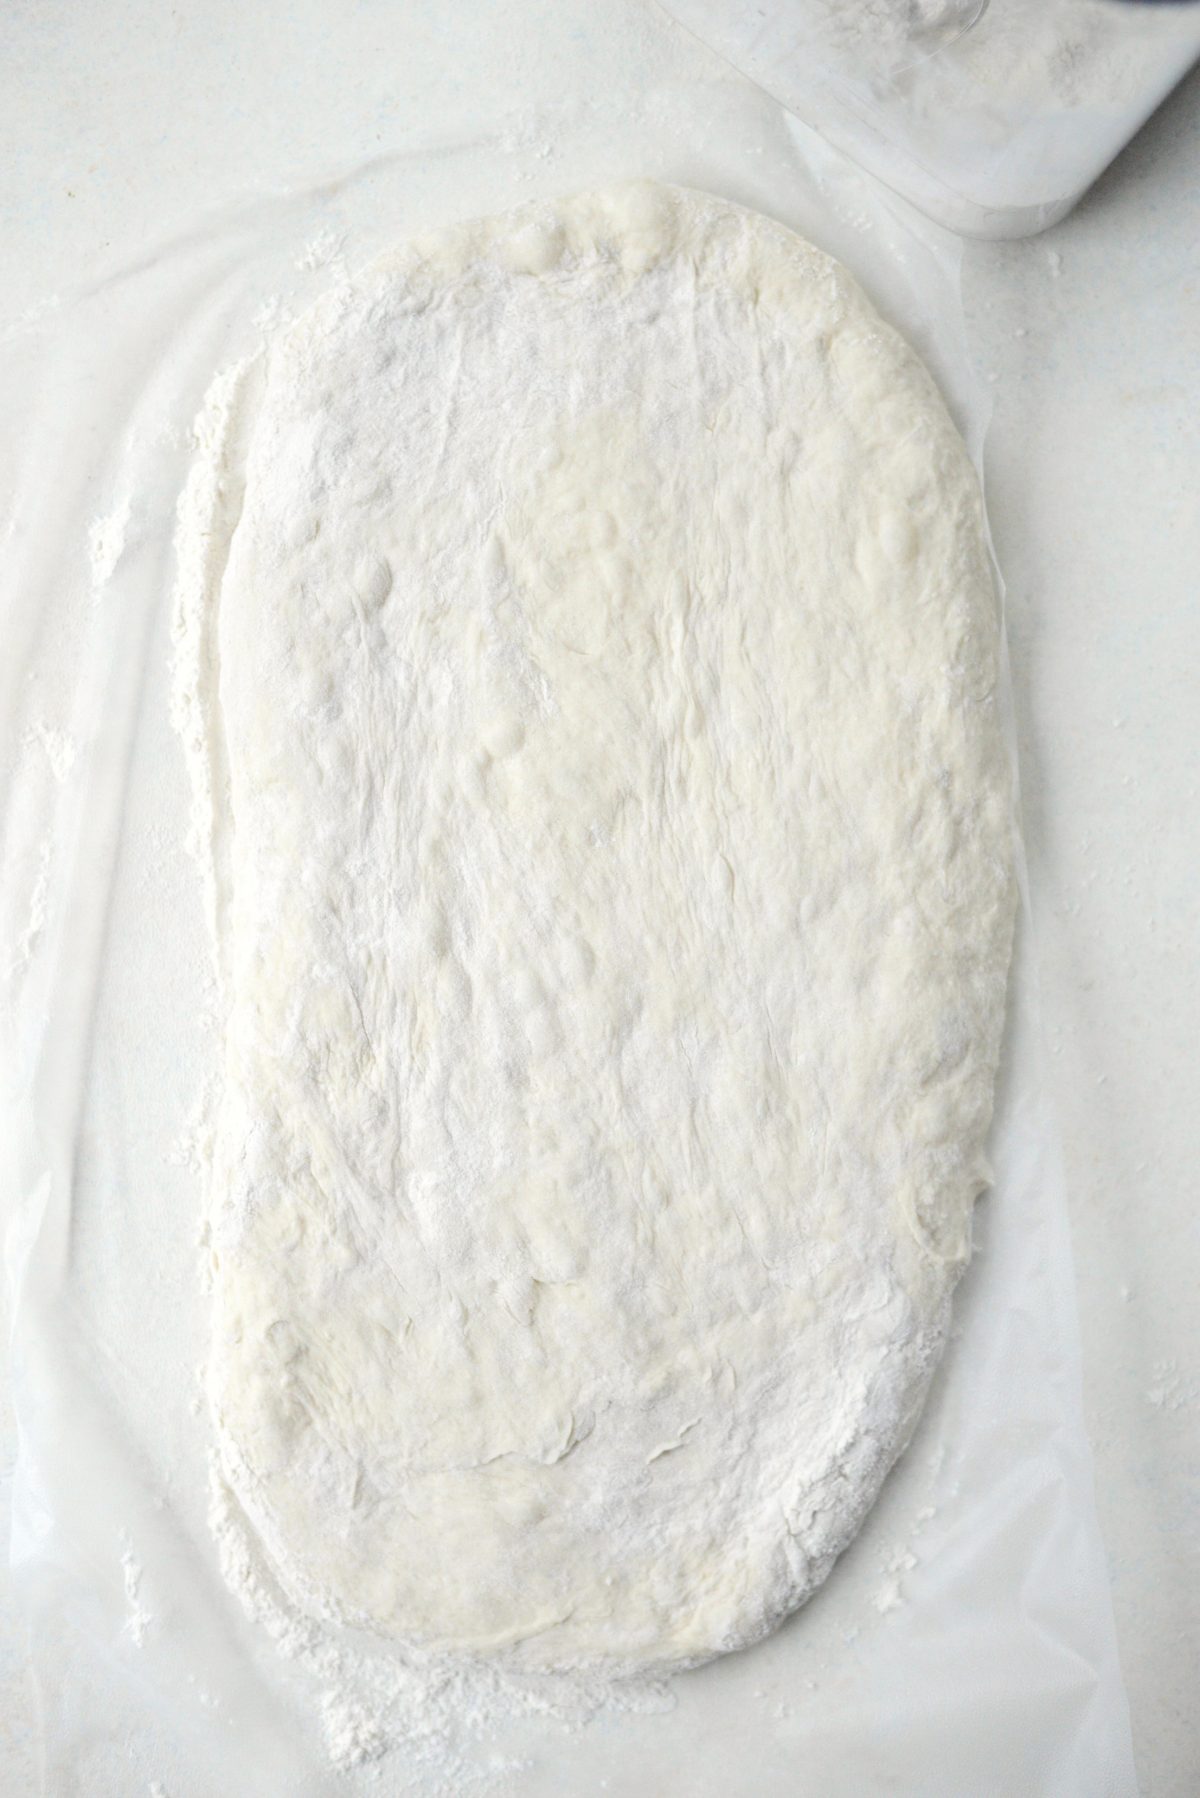 flat loaf shaped dough